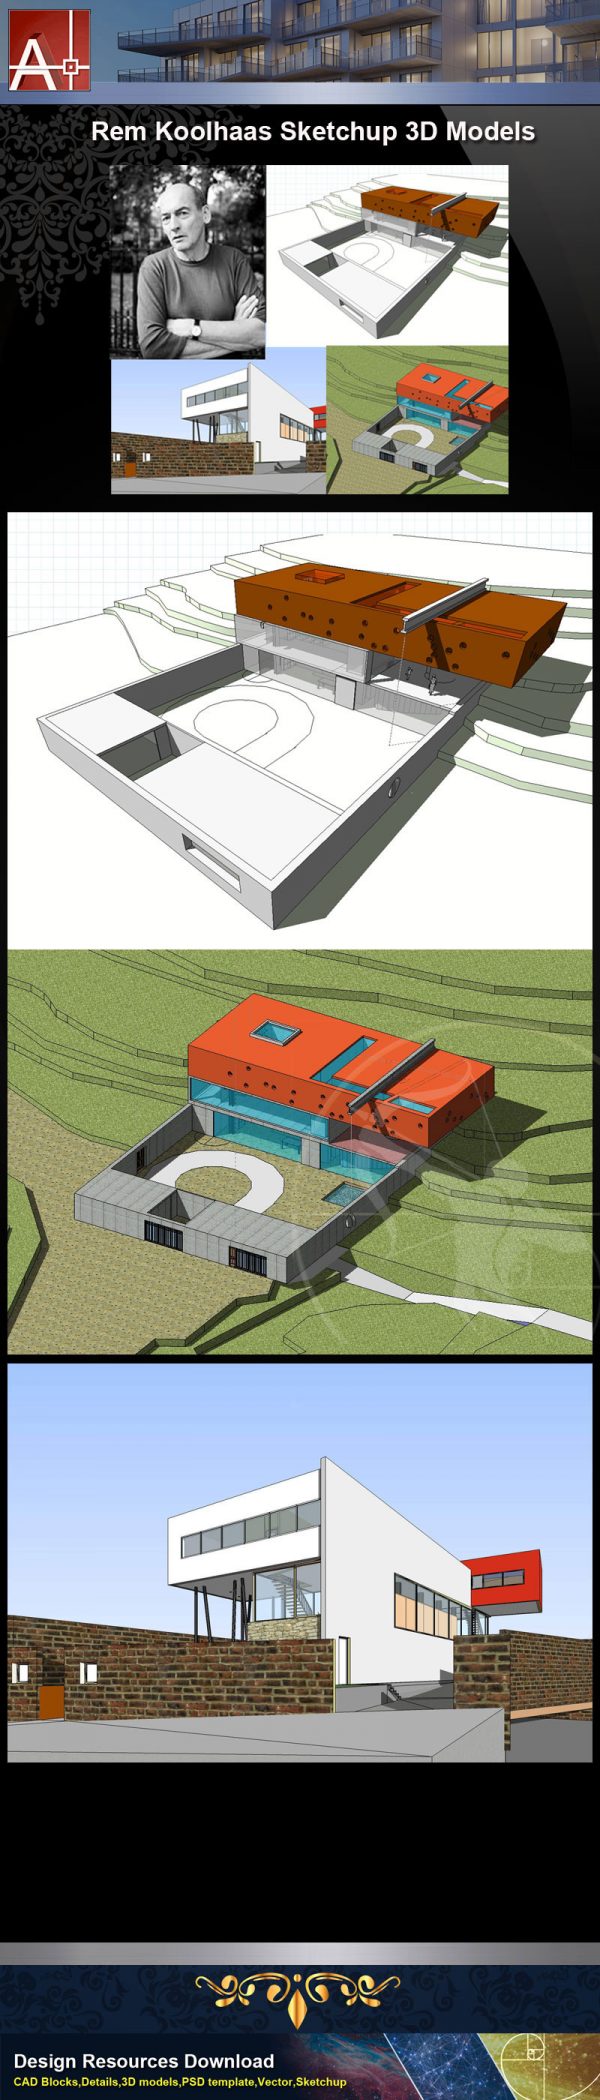 【建築大師Sketchup Models-Rem Koolhaas 雷姆·庫哈斯 精選4件建築3D模型】